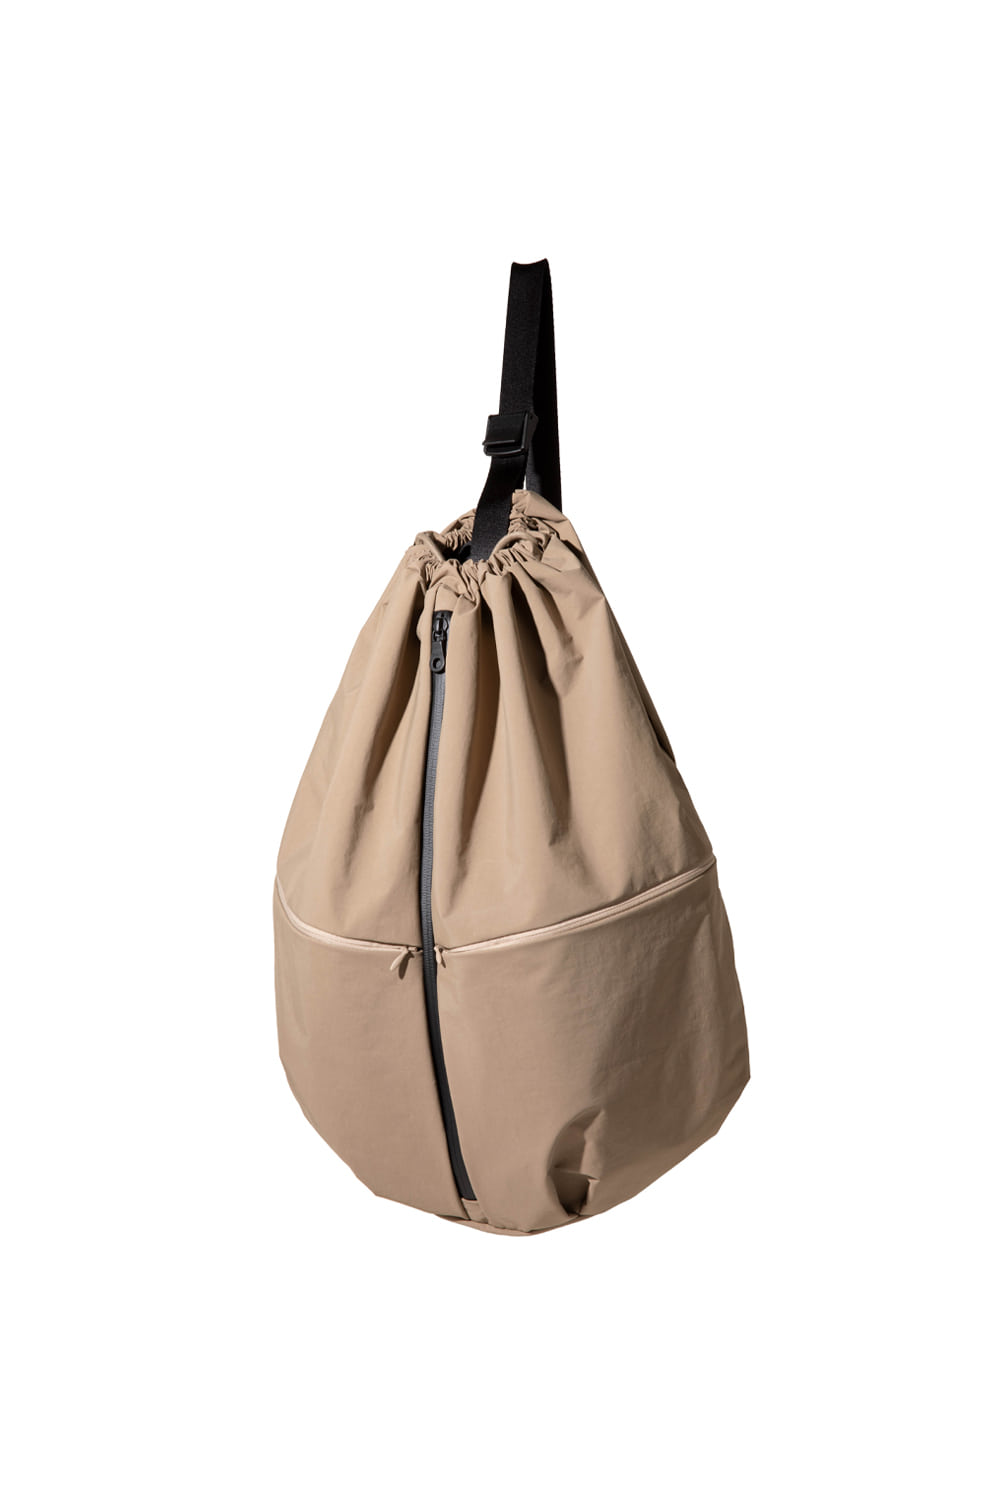 bundle bag (beige)